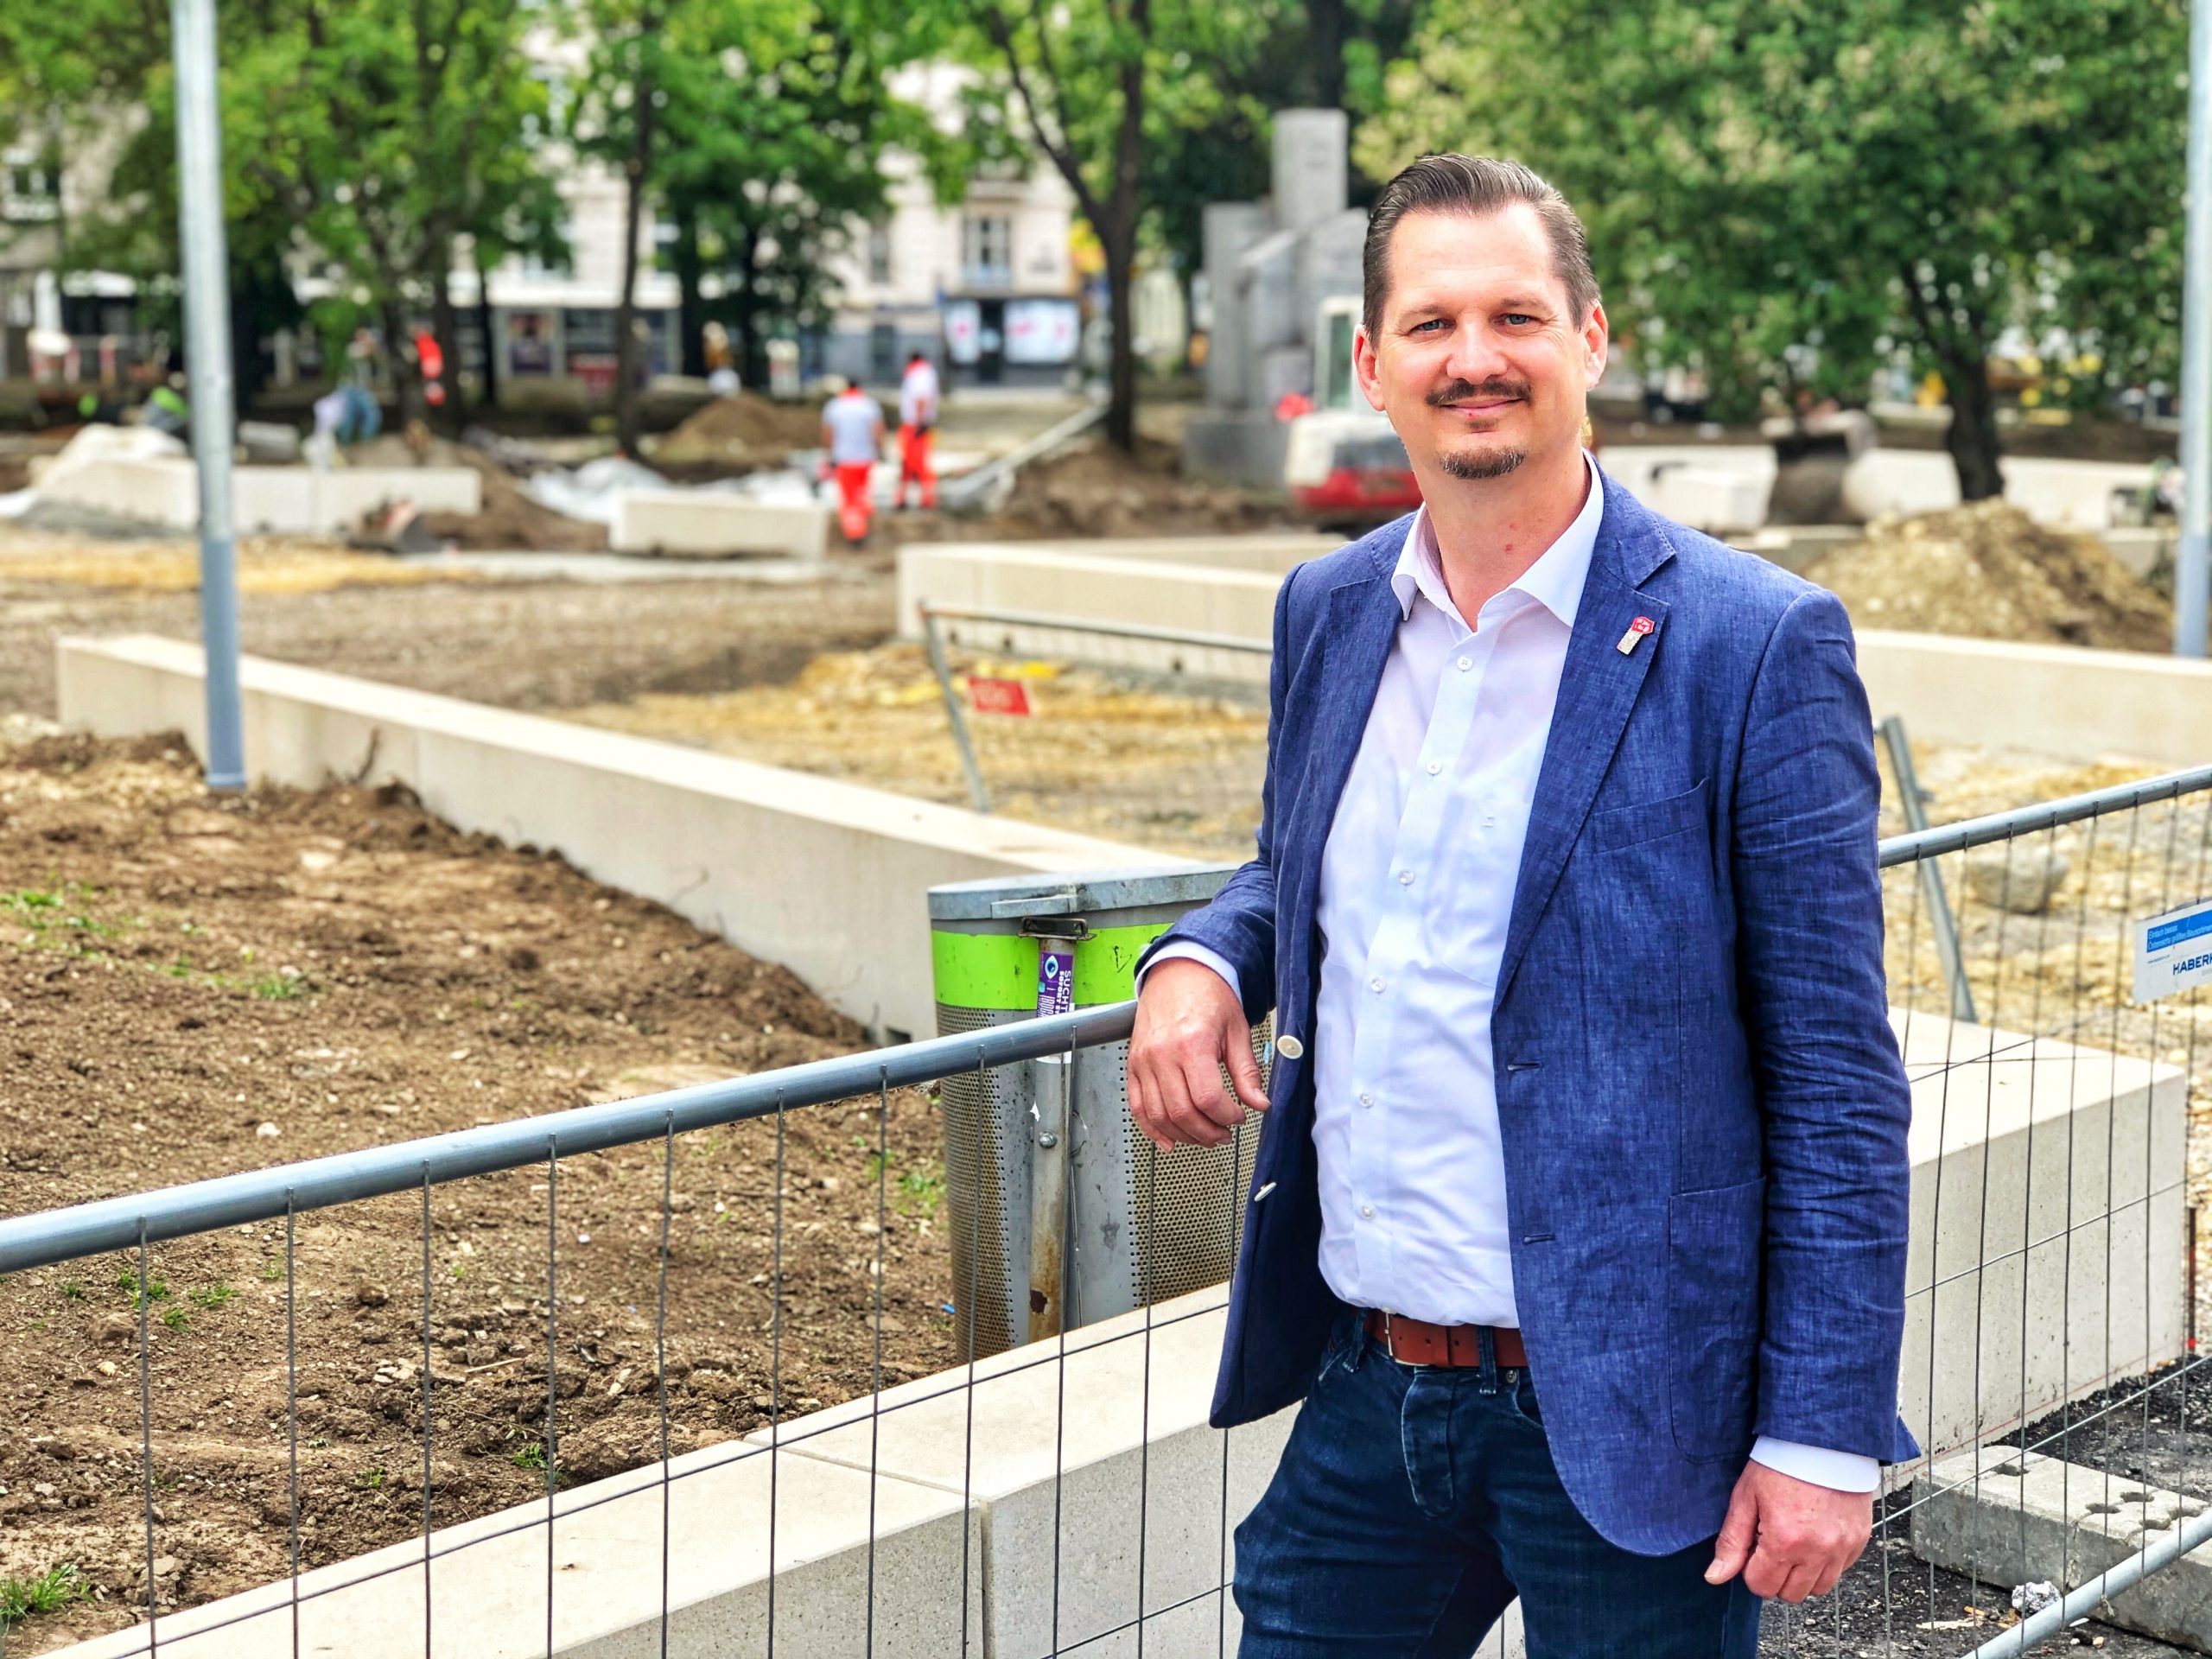 Favoritens Bezirksvorsteher Marcus Franz am Reumannplatz, wo nach vier Wochen Zwangspause die Arbeit wieder aufgenommen wurde. Fertigstellung des neuen Bezirkszentrums ist im Herbst 2020.